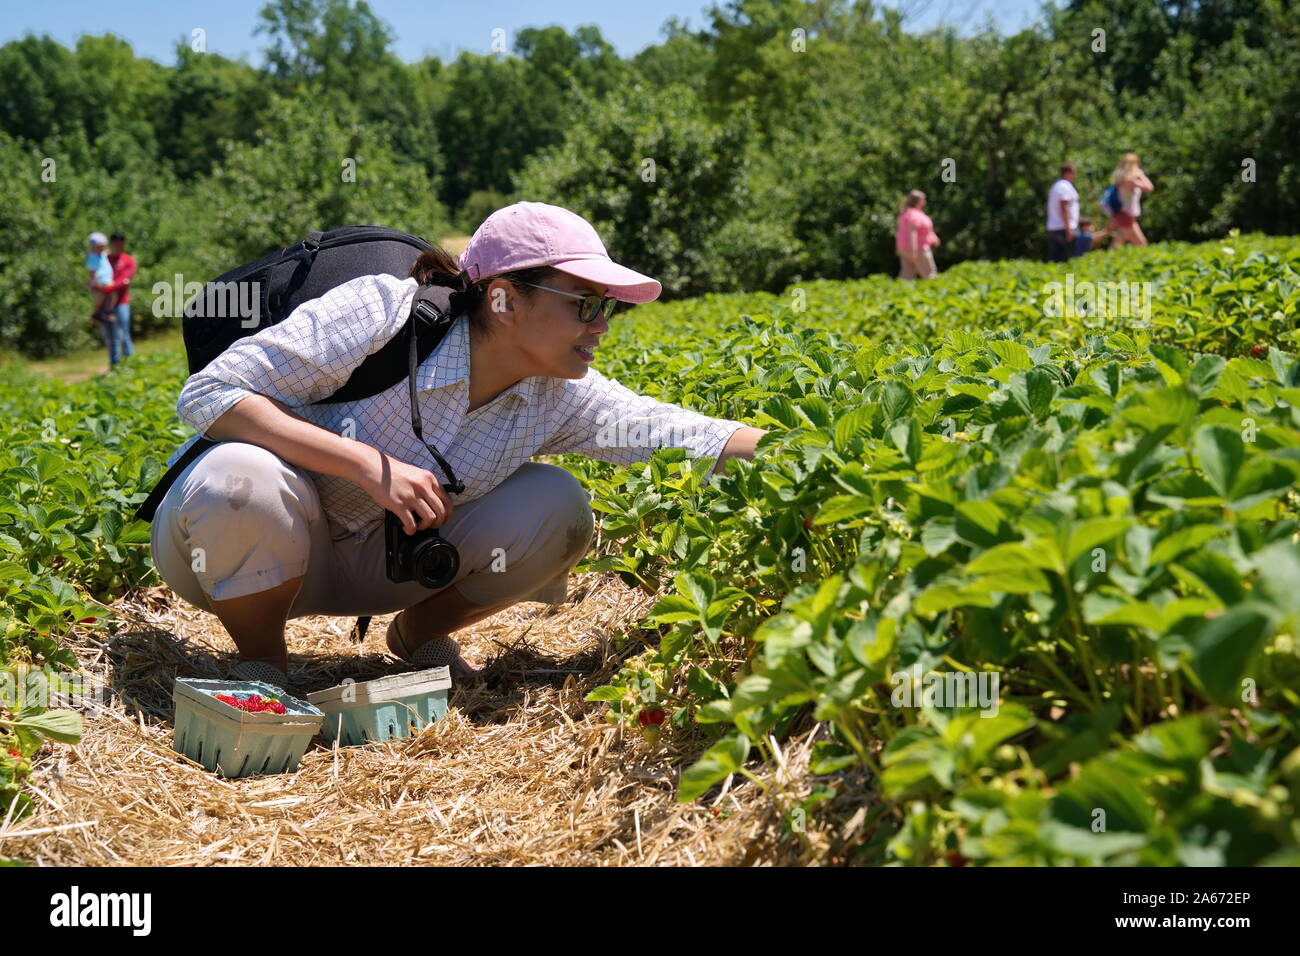 Middletown, CT USA. Jun 2019. Jeune photographe américaine d'origine asiatique, bénéficiant d'une belle journée de cueillette des fraises dans un verger. Banque D'Images